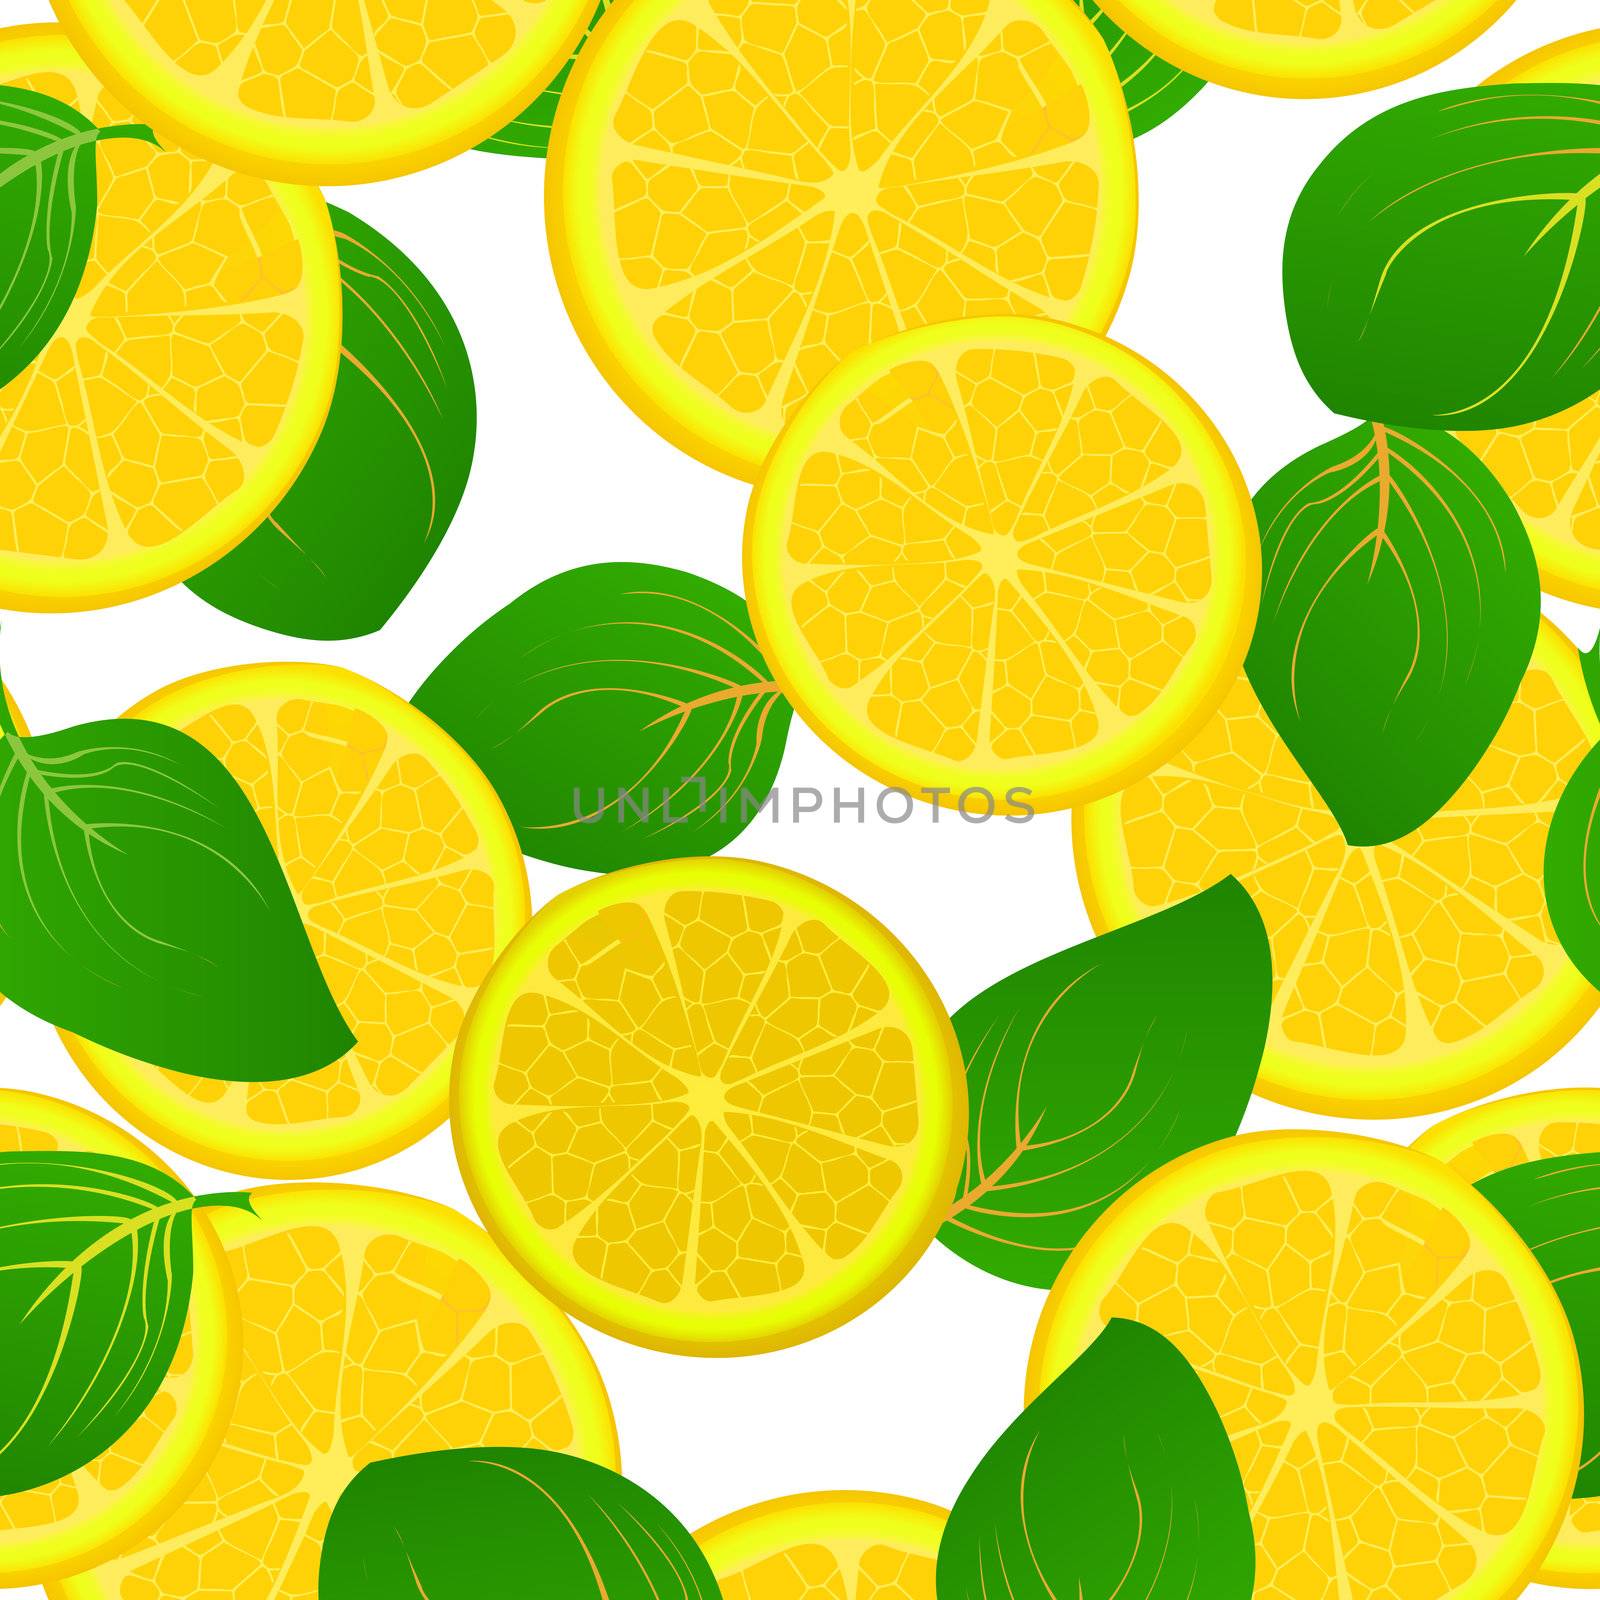 Lemon slice pattern by Lirch